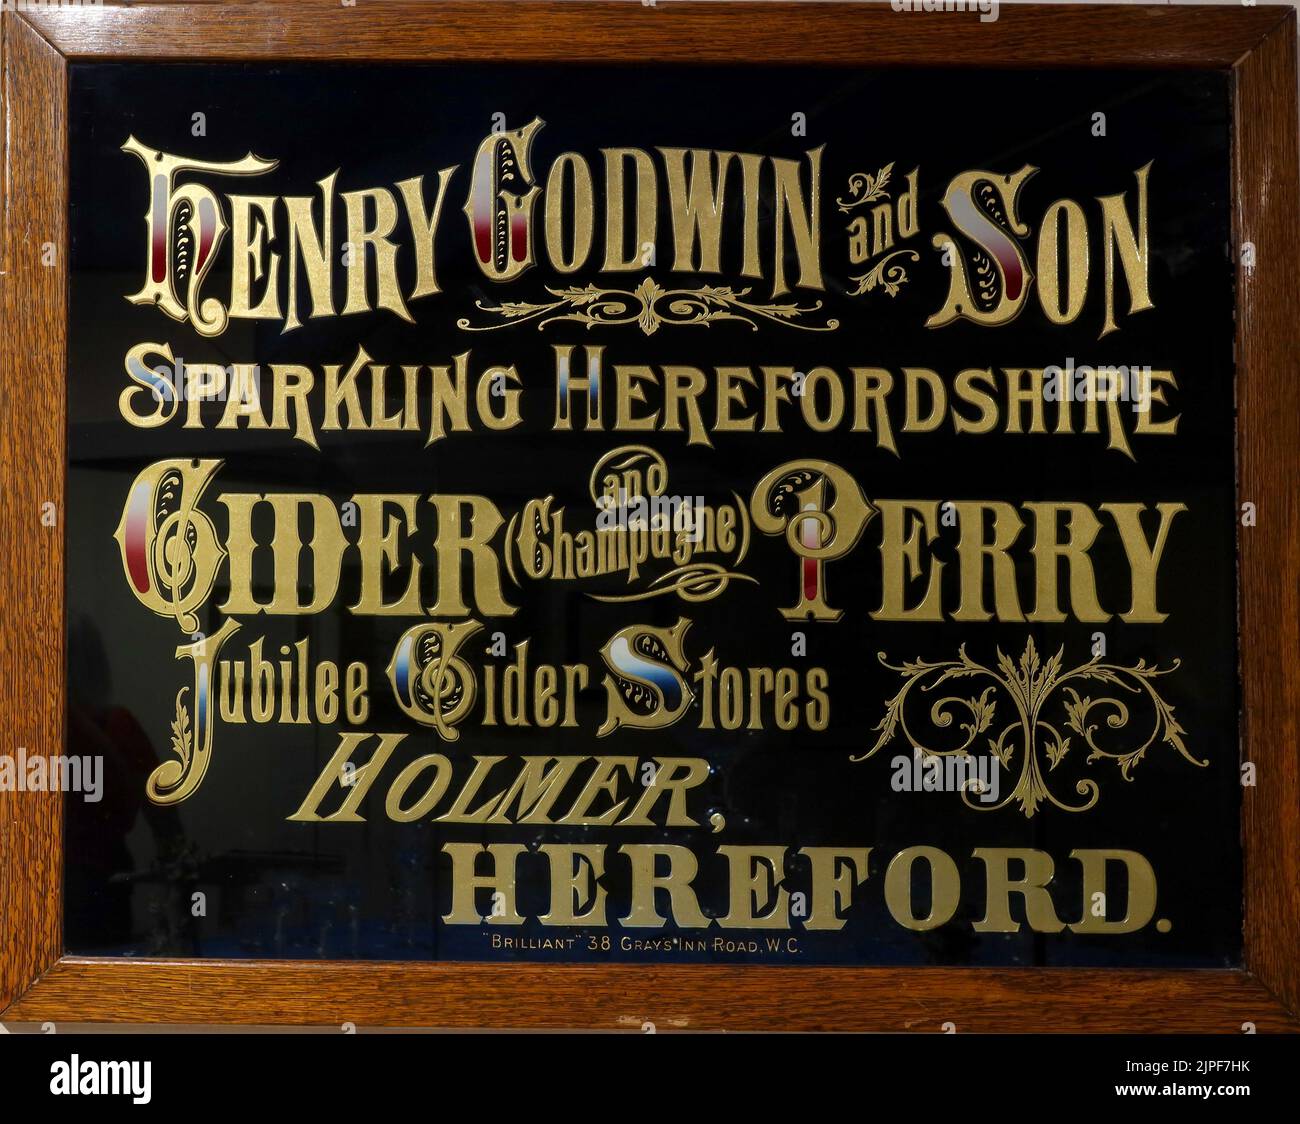 Publicité encadrée de noir, Henry Godwin et son, Herefordshire étincelant, Cider Champagne Perry, Jubilee Cider Stores, Holmer, Hereford, HR1 1LL Banque D'Images